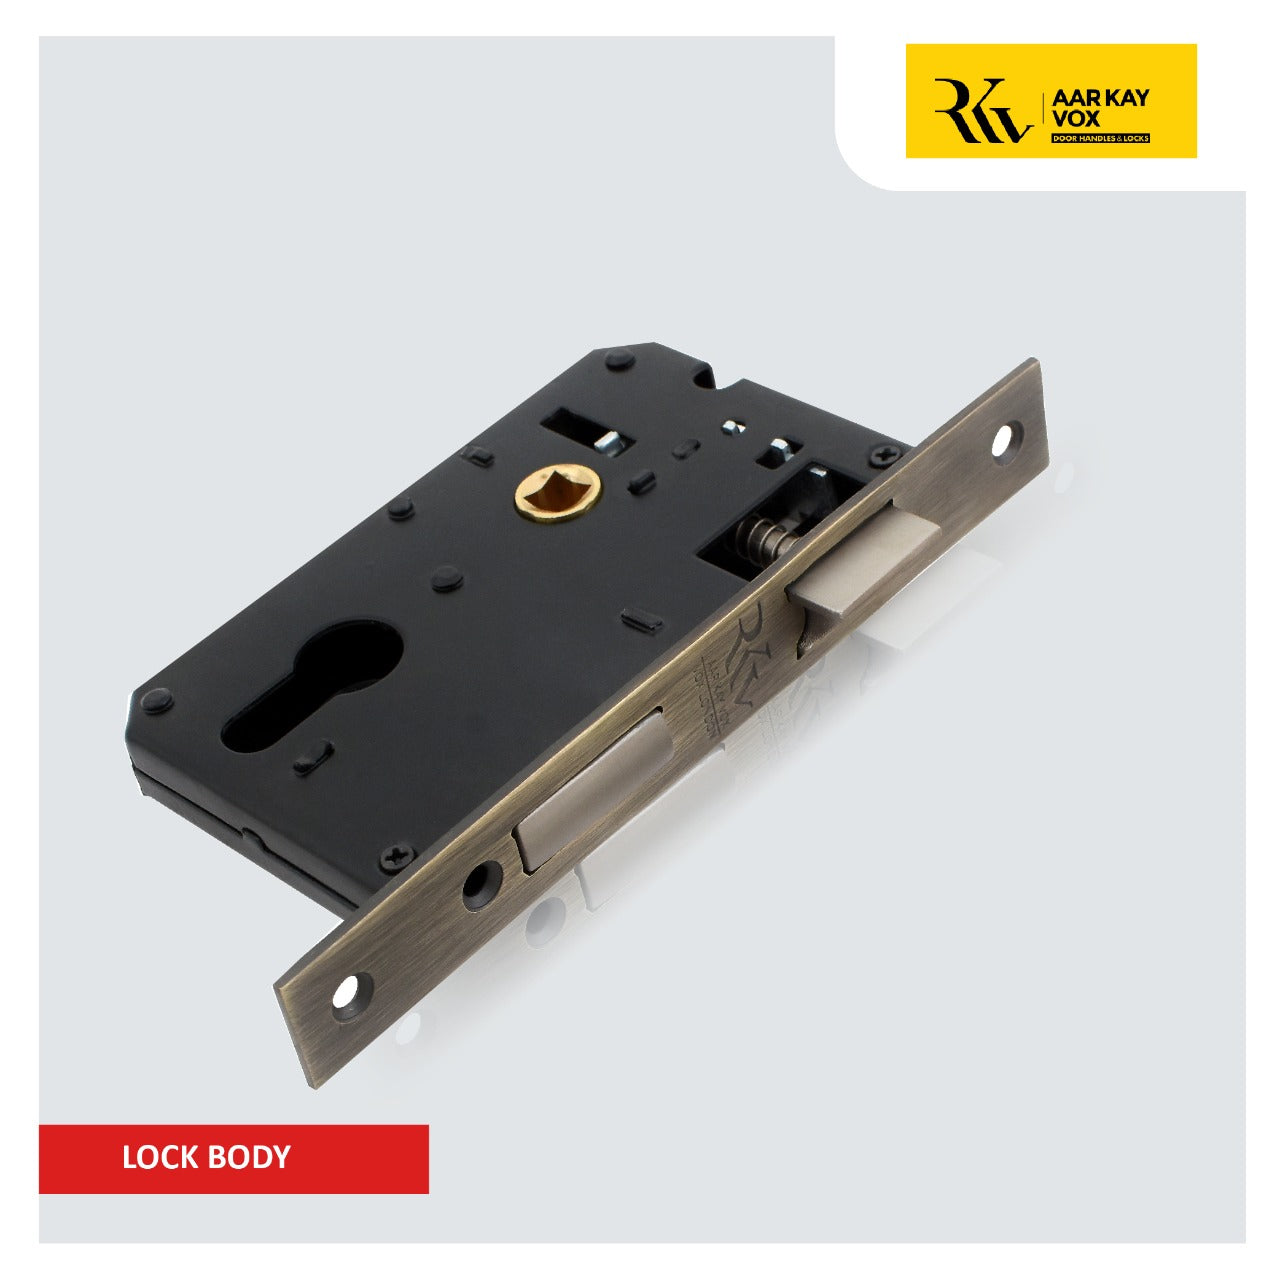 Aar Kay Vox Lock Bodies - High-quality lock bodies for enhanced door security, sold by M. M. Noorbhoy & Co.